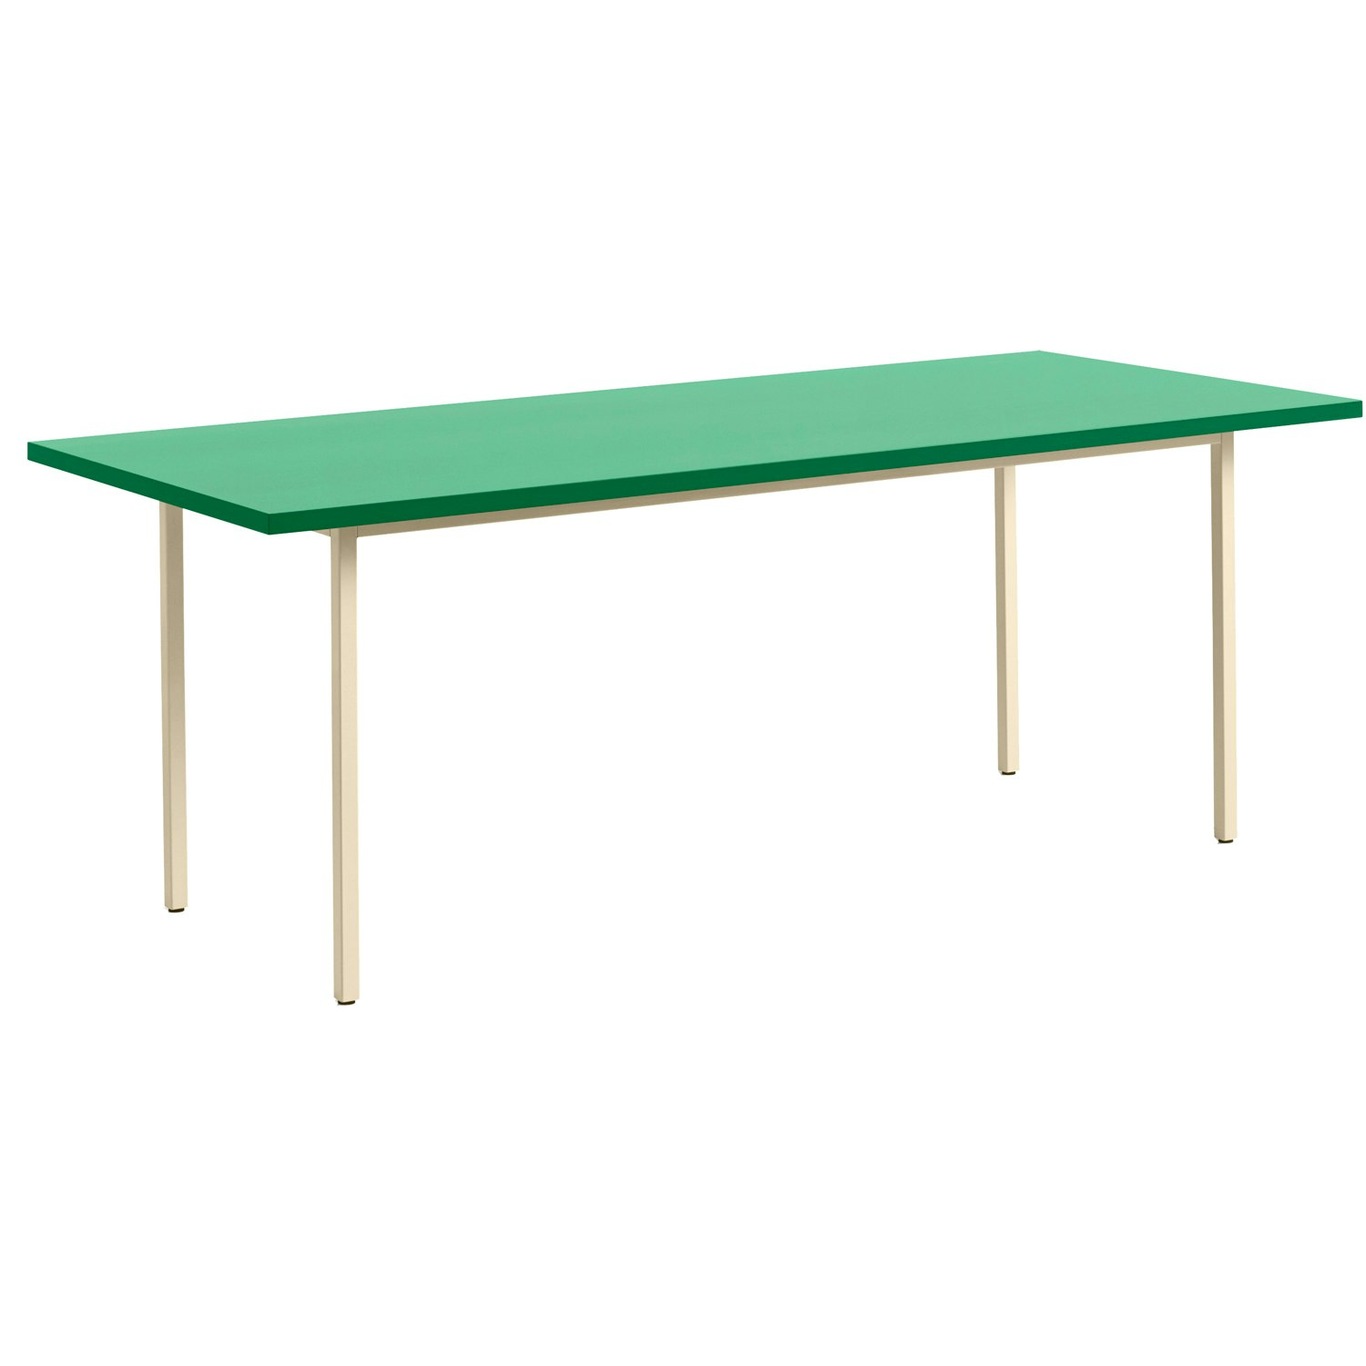 Two-Colour Tisch 200x90 cm, Elfenbein / Green Mint